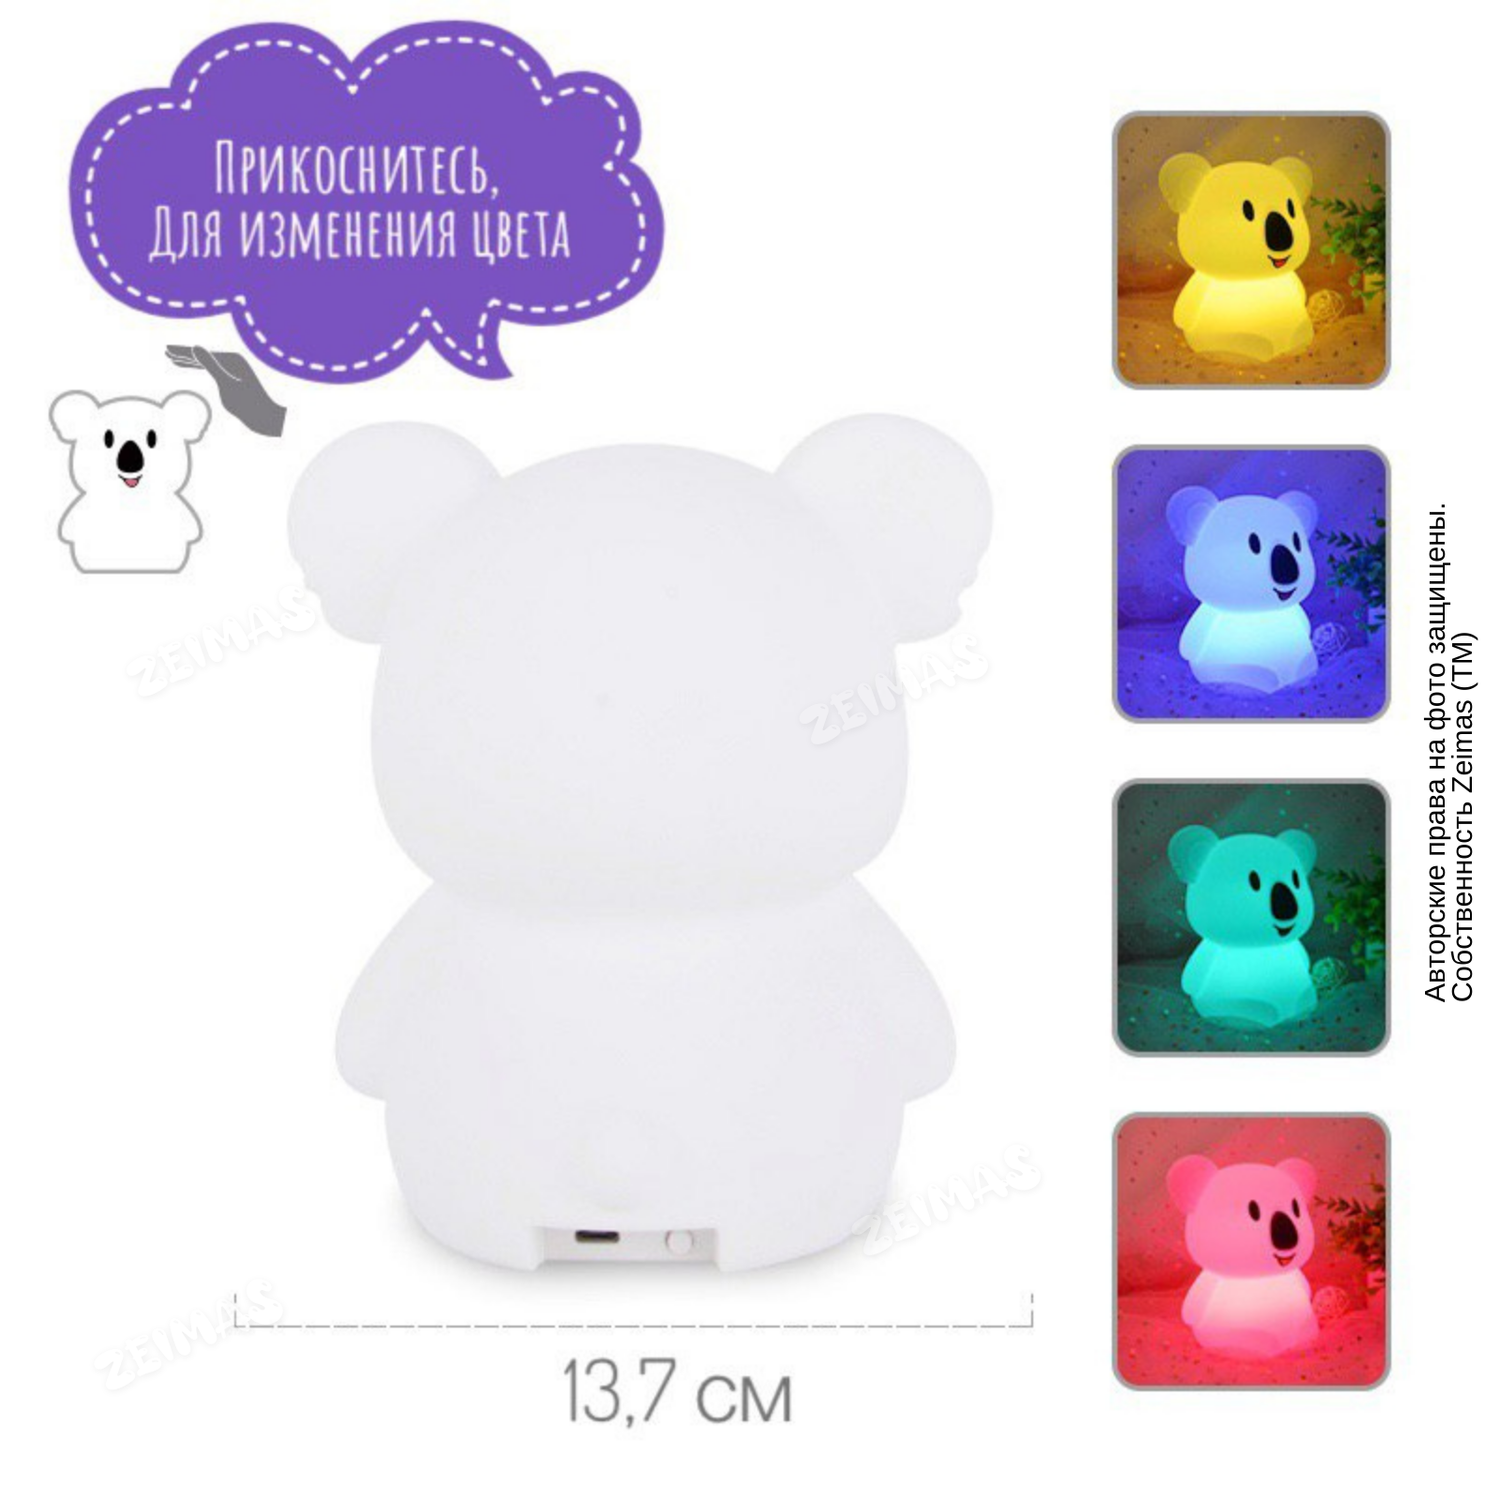 Ночник детский силиконовый Zeimas светильник игрушка Коала с пультом 9 цветов большой размер - фото 7